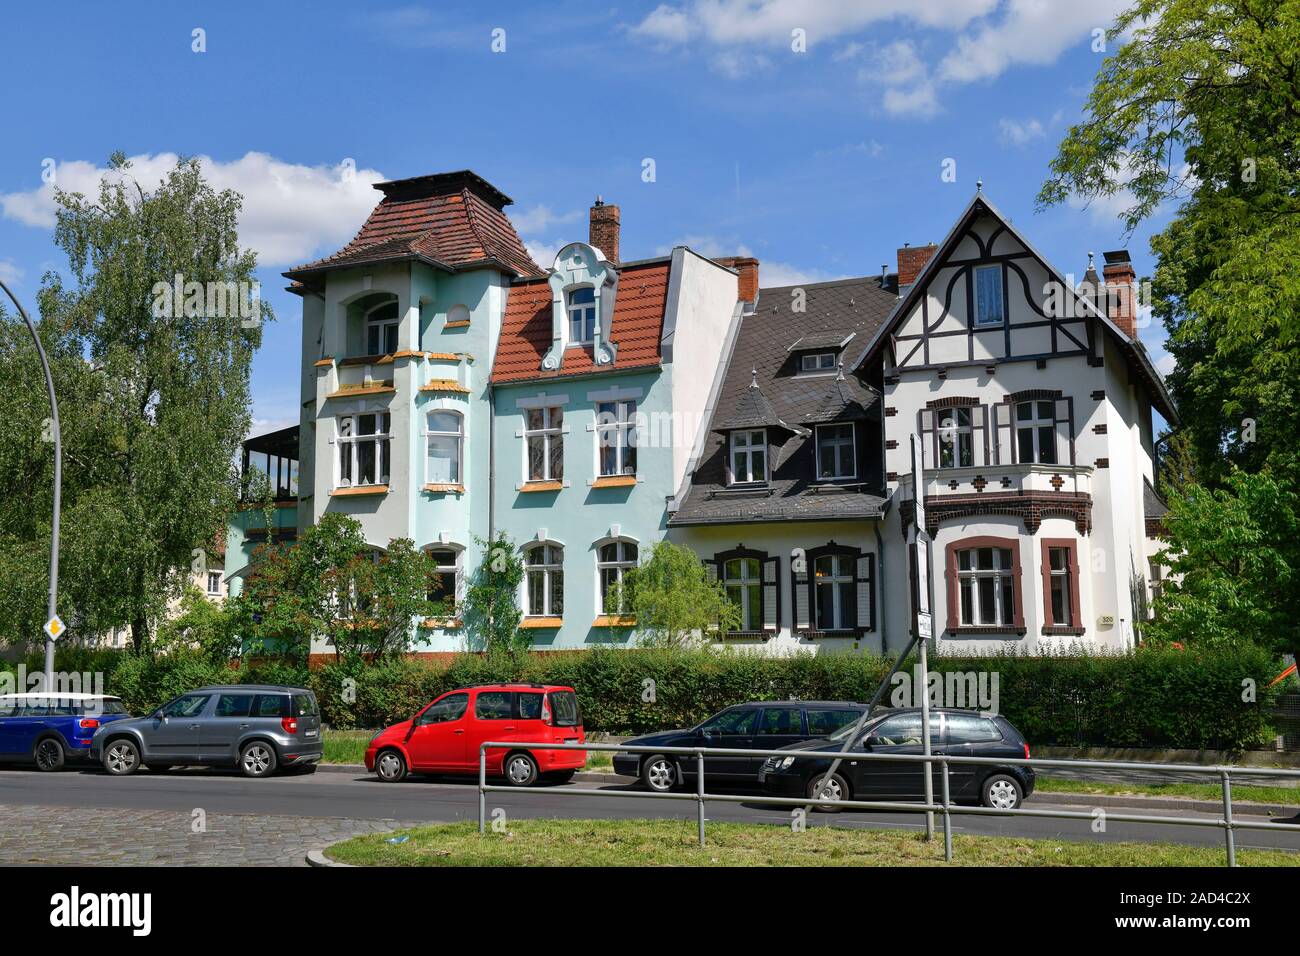 Villen, Clayallee, Zehlendorf, Steglitz-Zehlendorf, Berlin, Deutschland  Stock Photo - Alamy